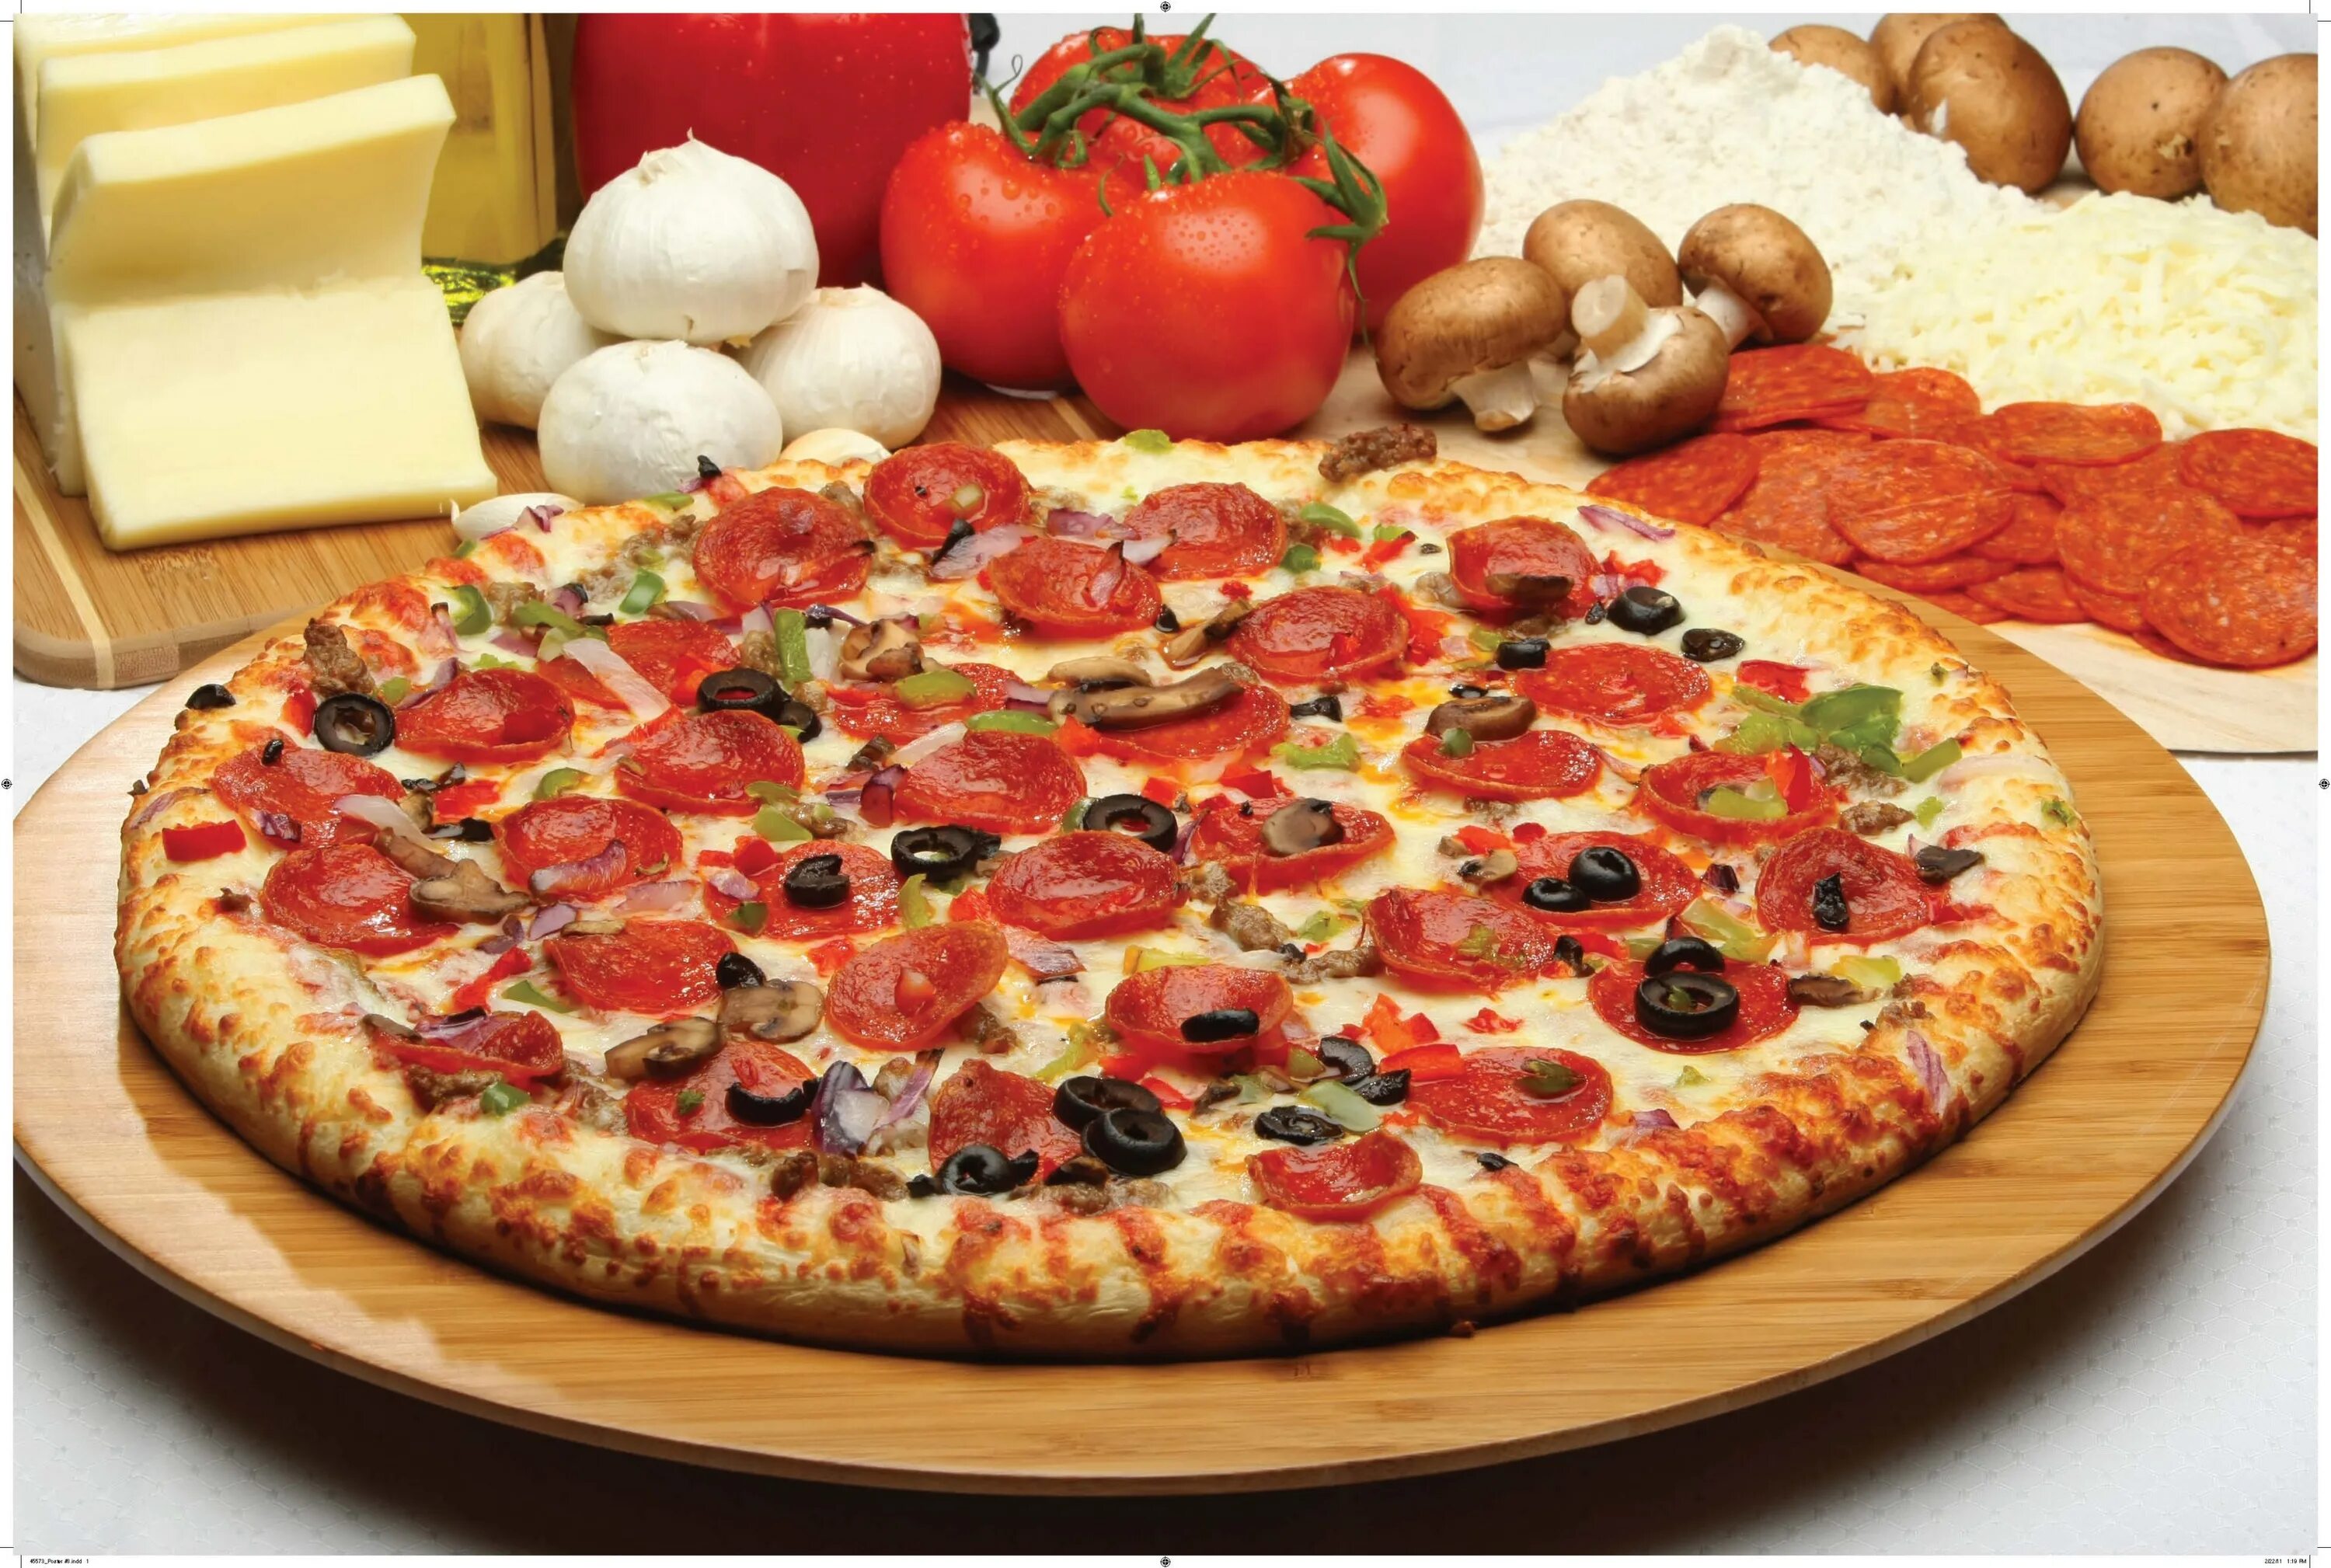 Окто пицца. "Пицца". Красивая пицца. Пиццерия в Италии. Итальянская кухня пицца.